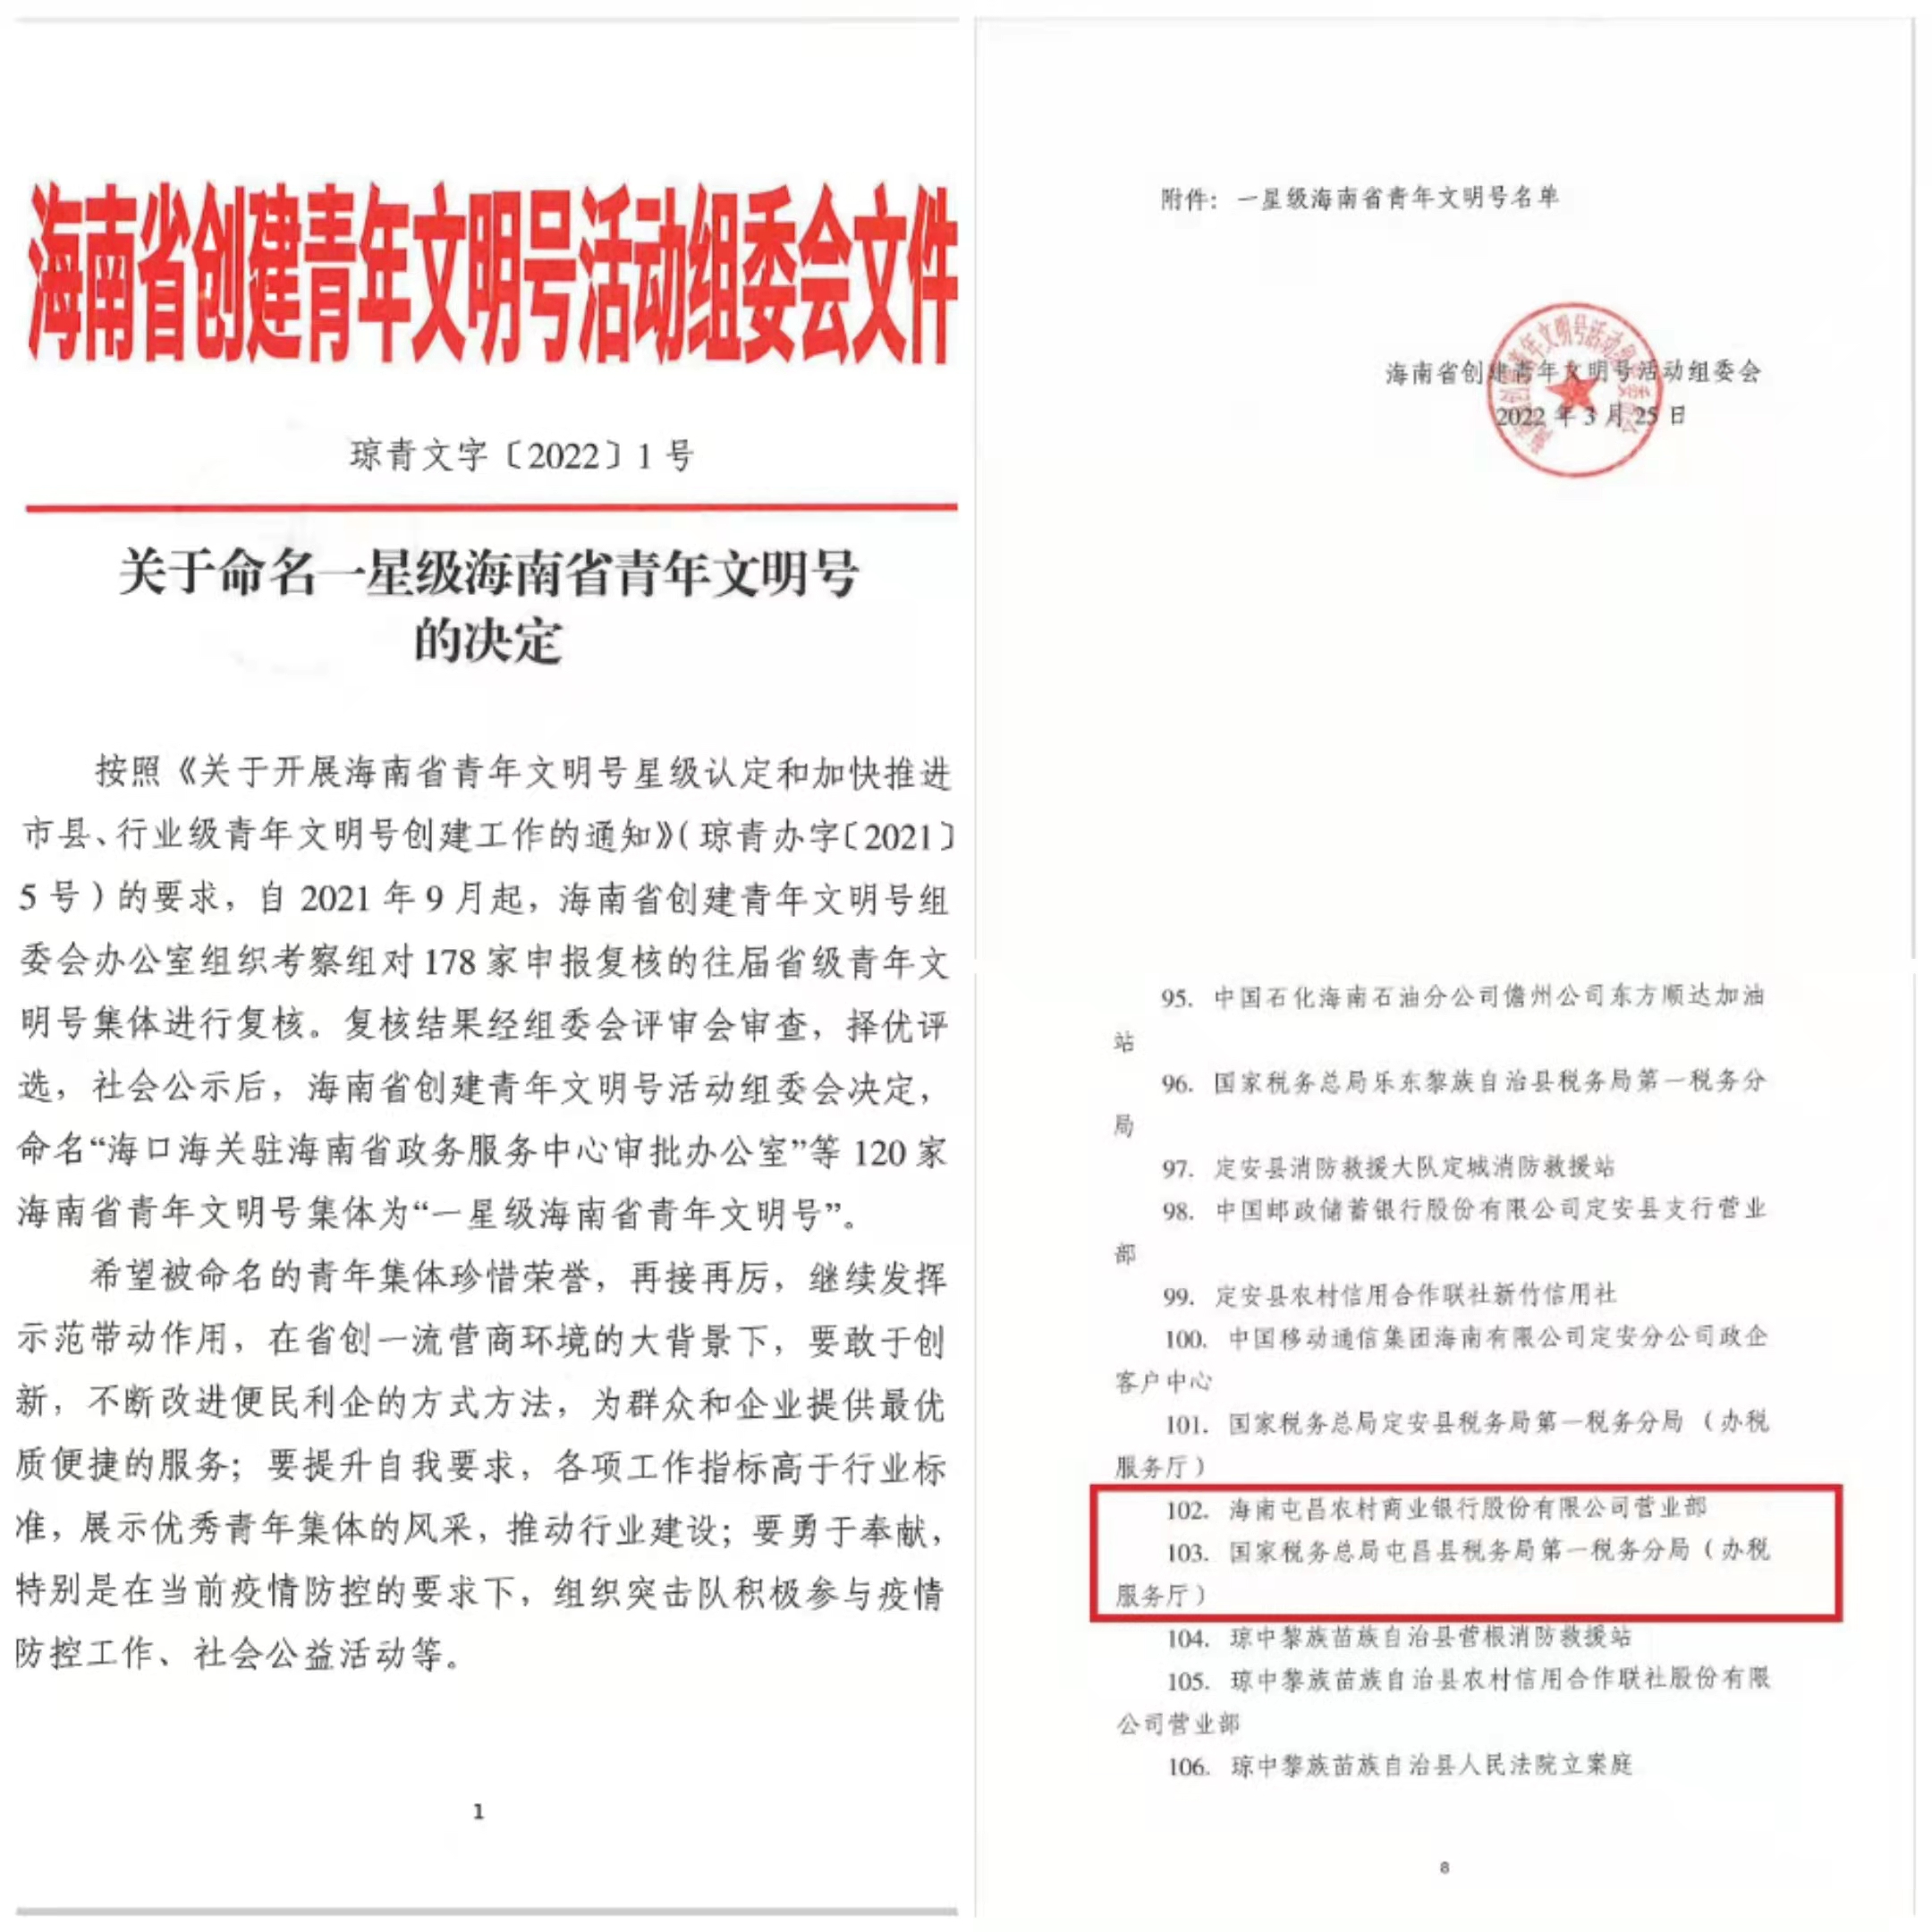 屯昌农商银行营业部获评第18届海南省“青年文明号”称号